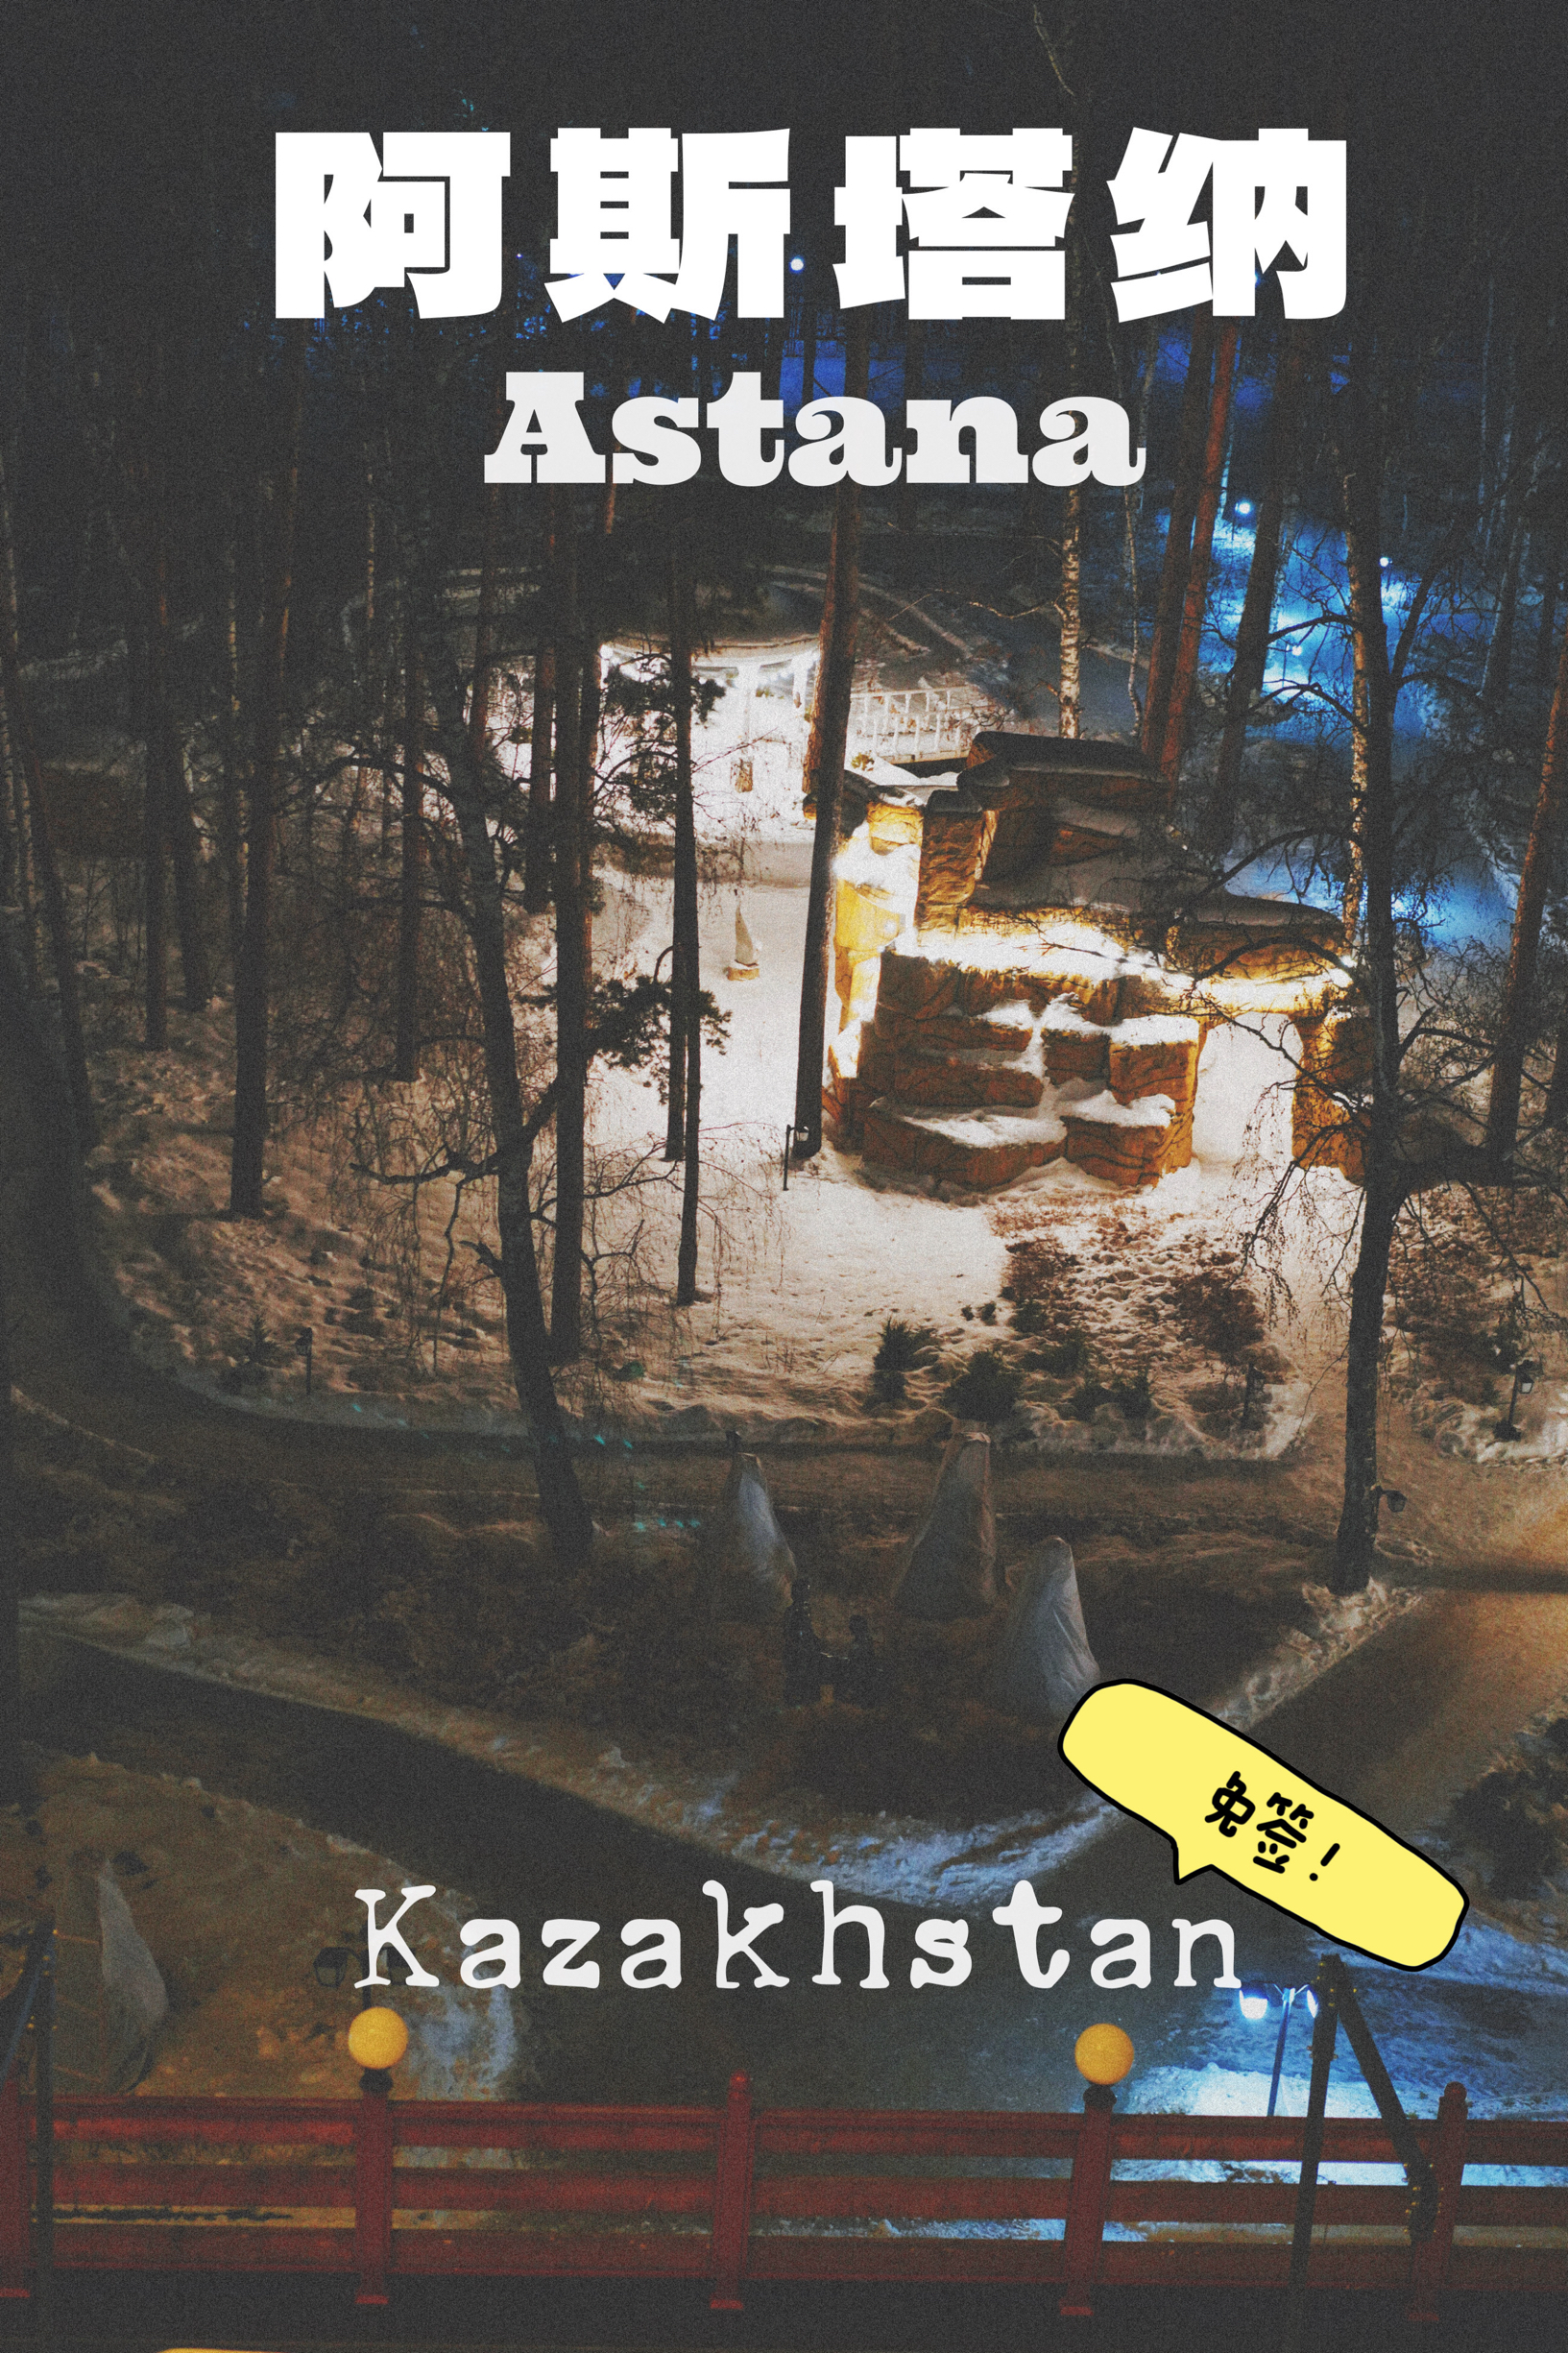 免签阿斯塔纳必须知道的n件事，哈萨克斯坦来啦！